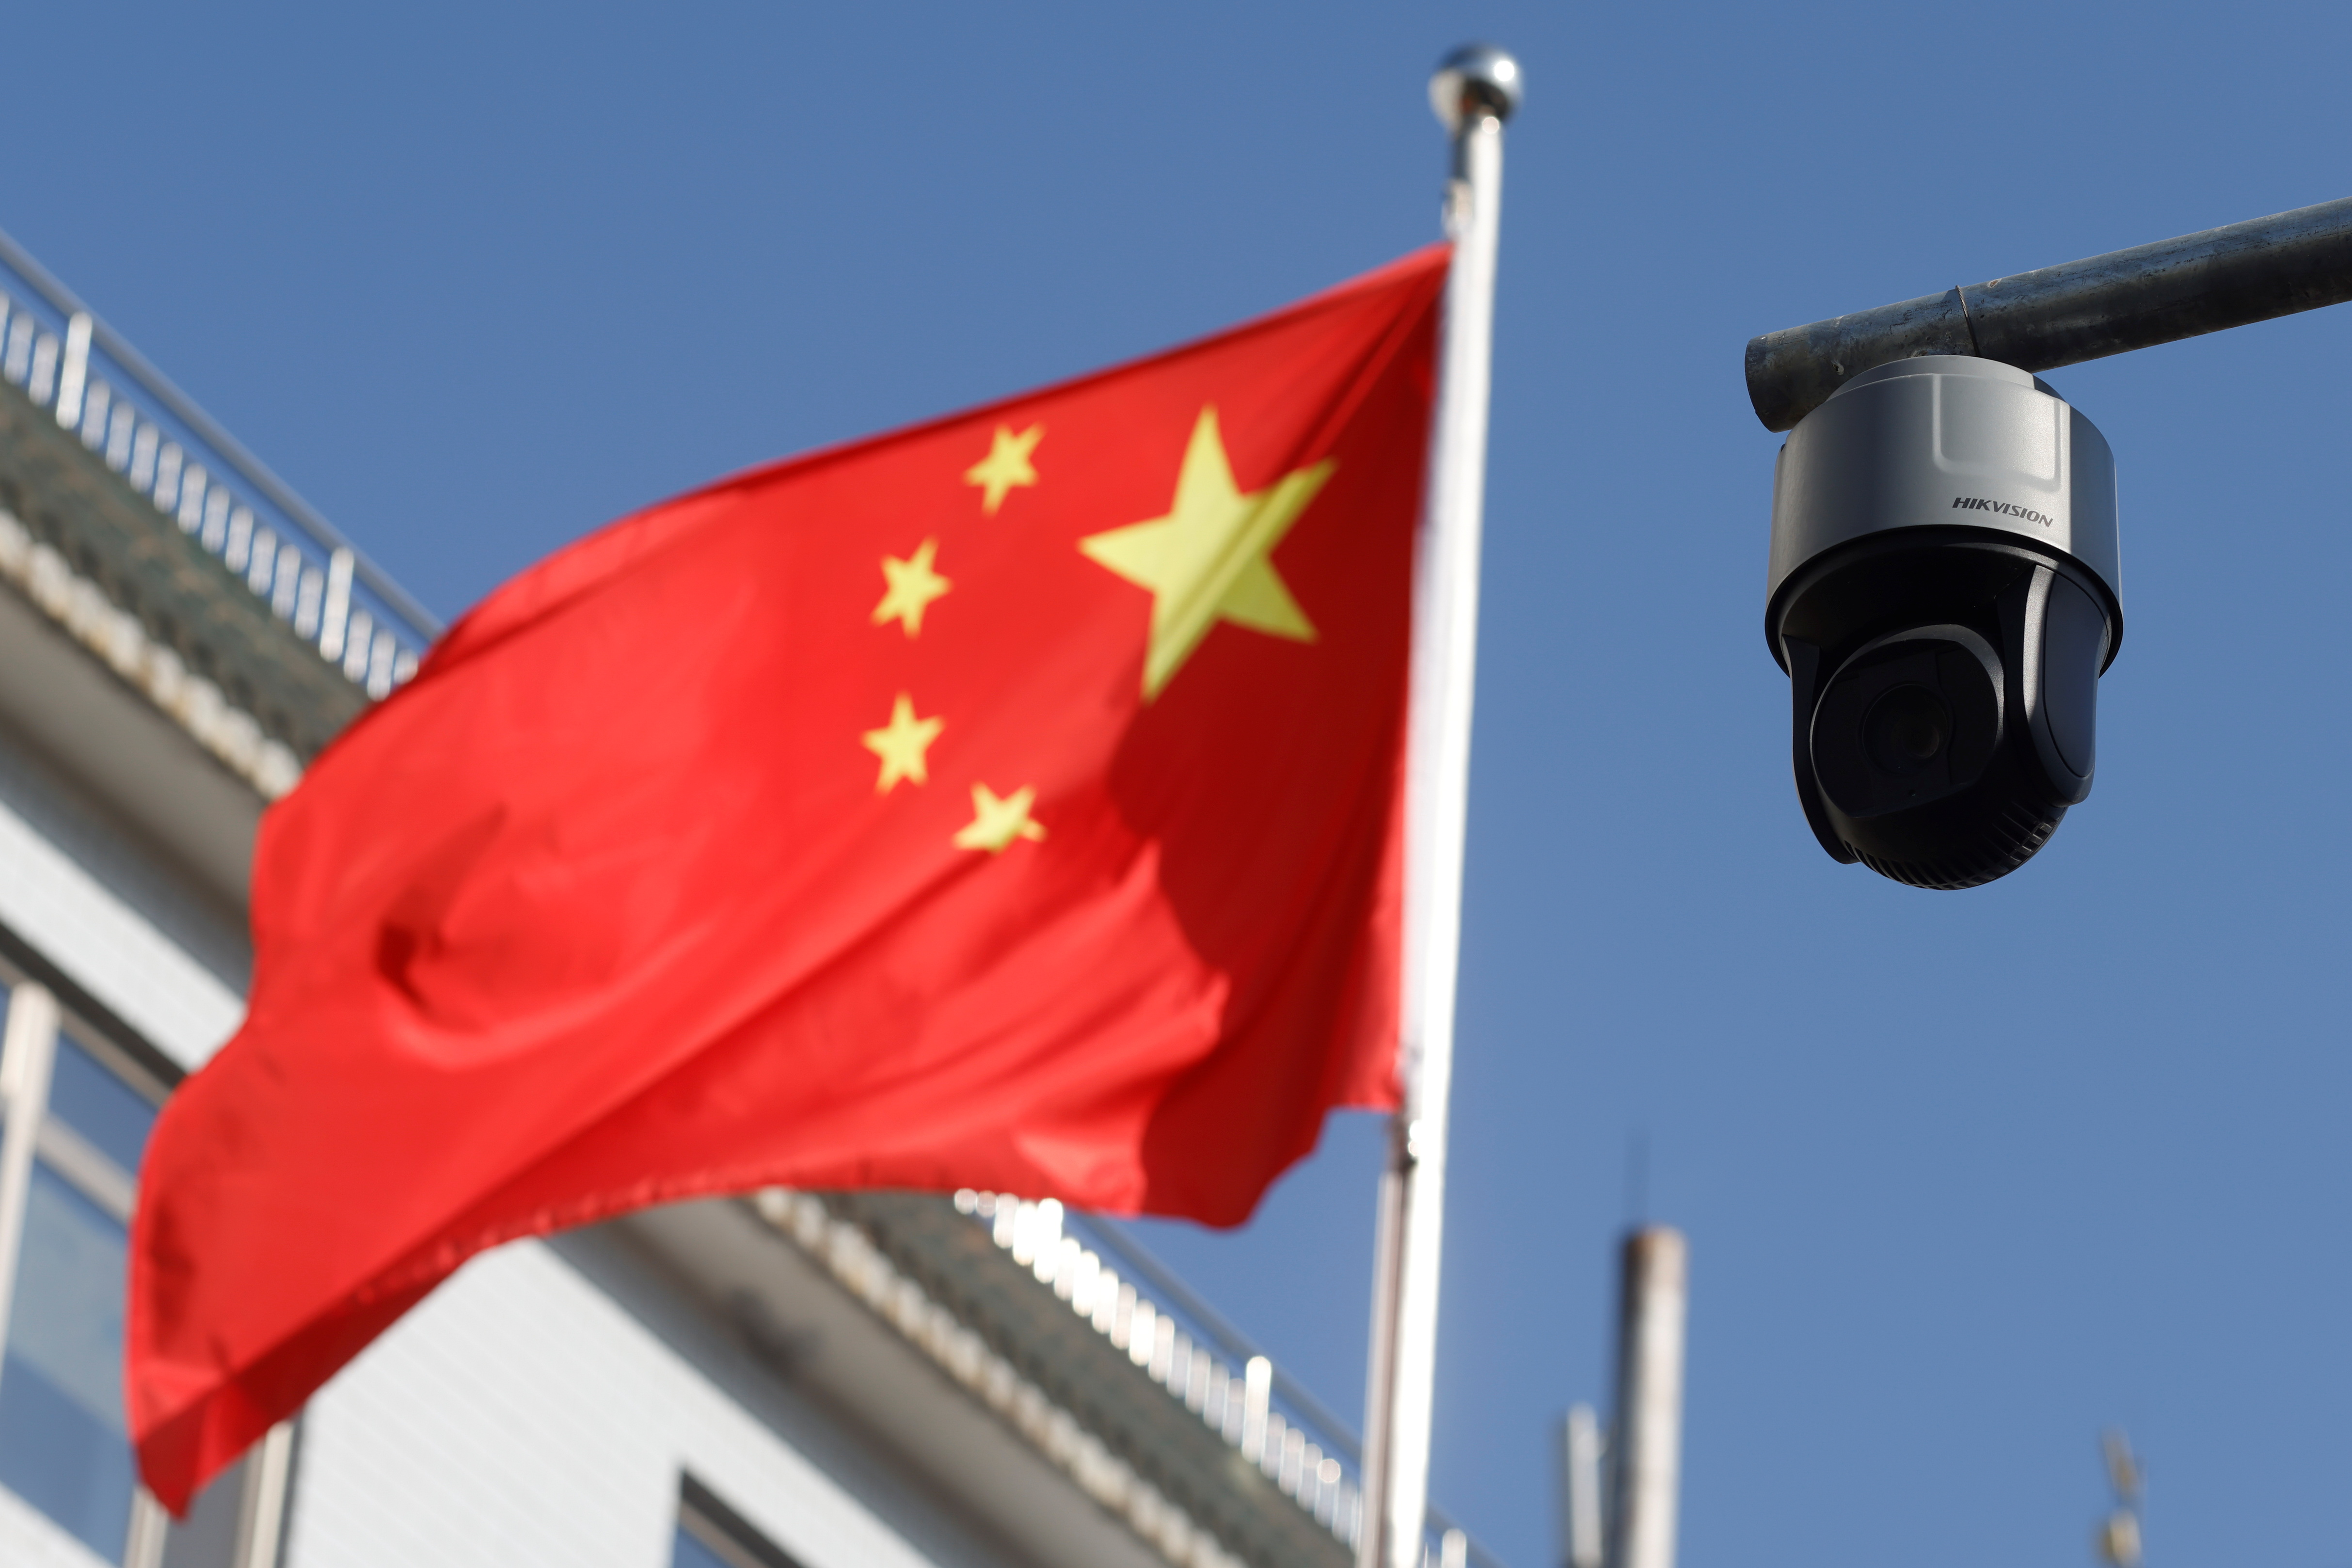 Security camera in Beijing (Reuters)